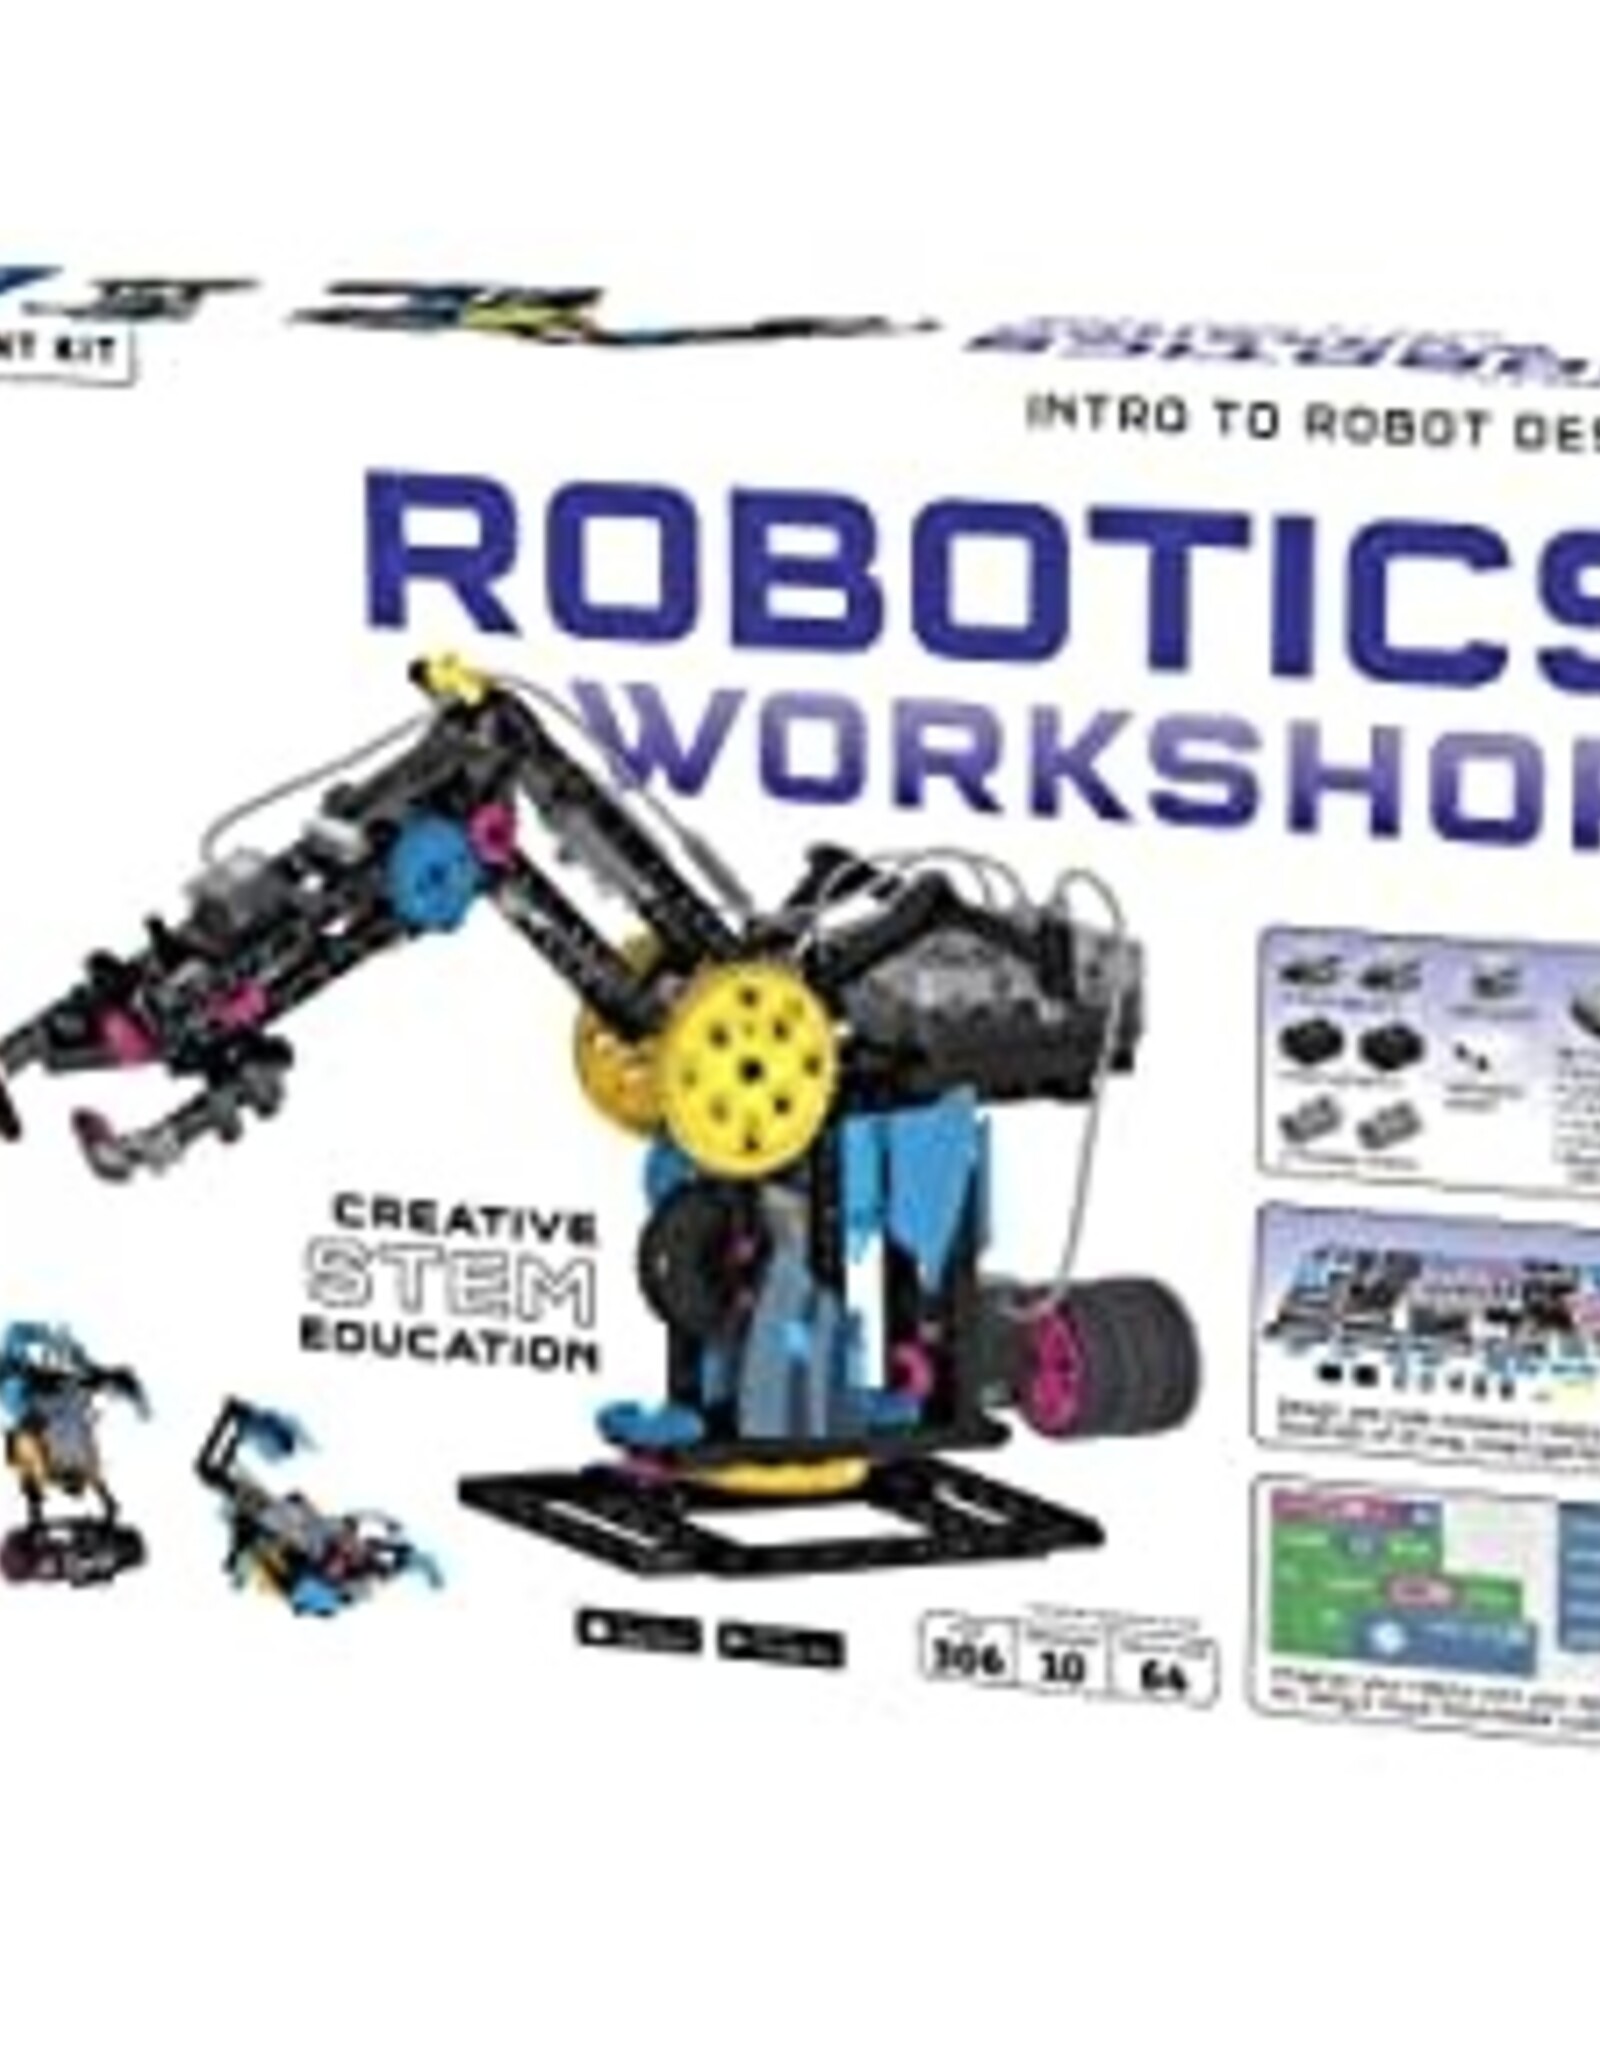 Signature Robotics Workshop